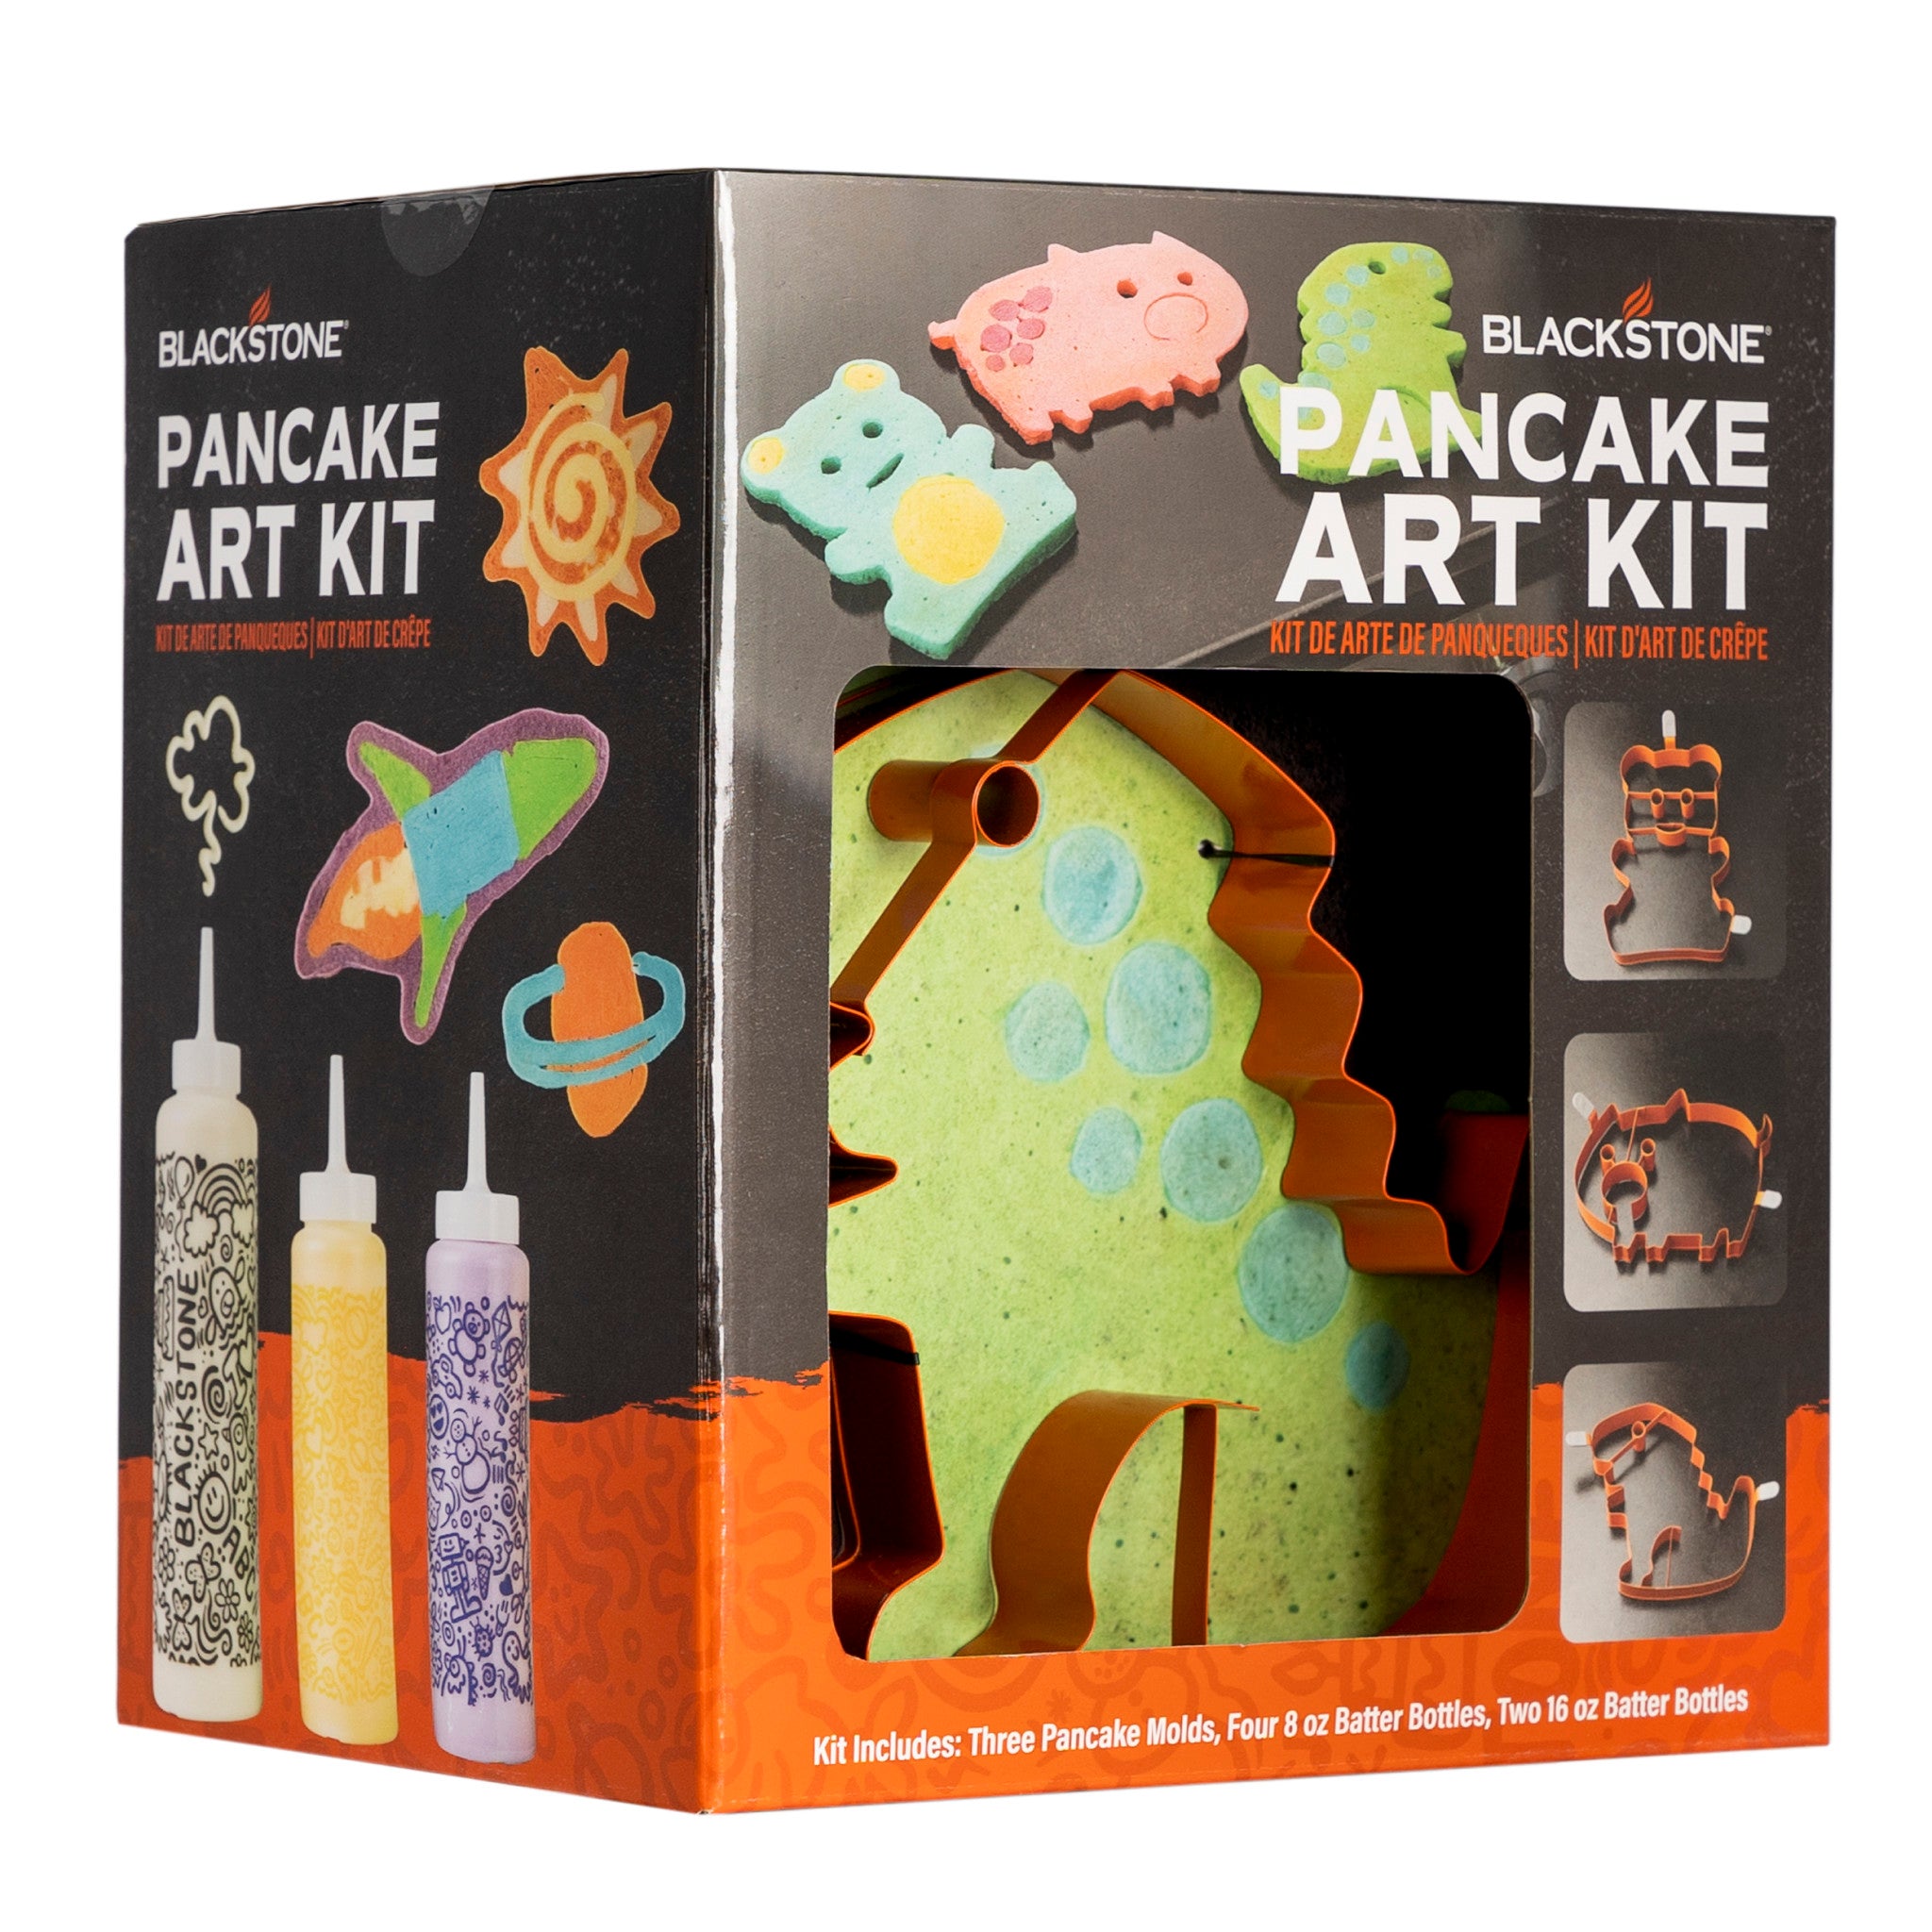 Turn Boring Pancakes Into FUN Art with This Pancake Art Kit (+ NO